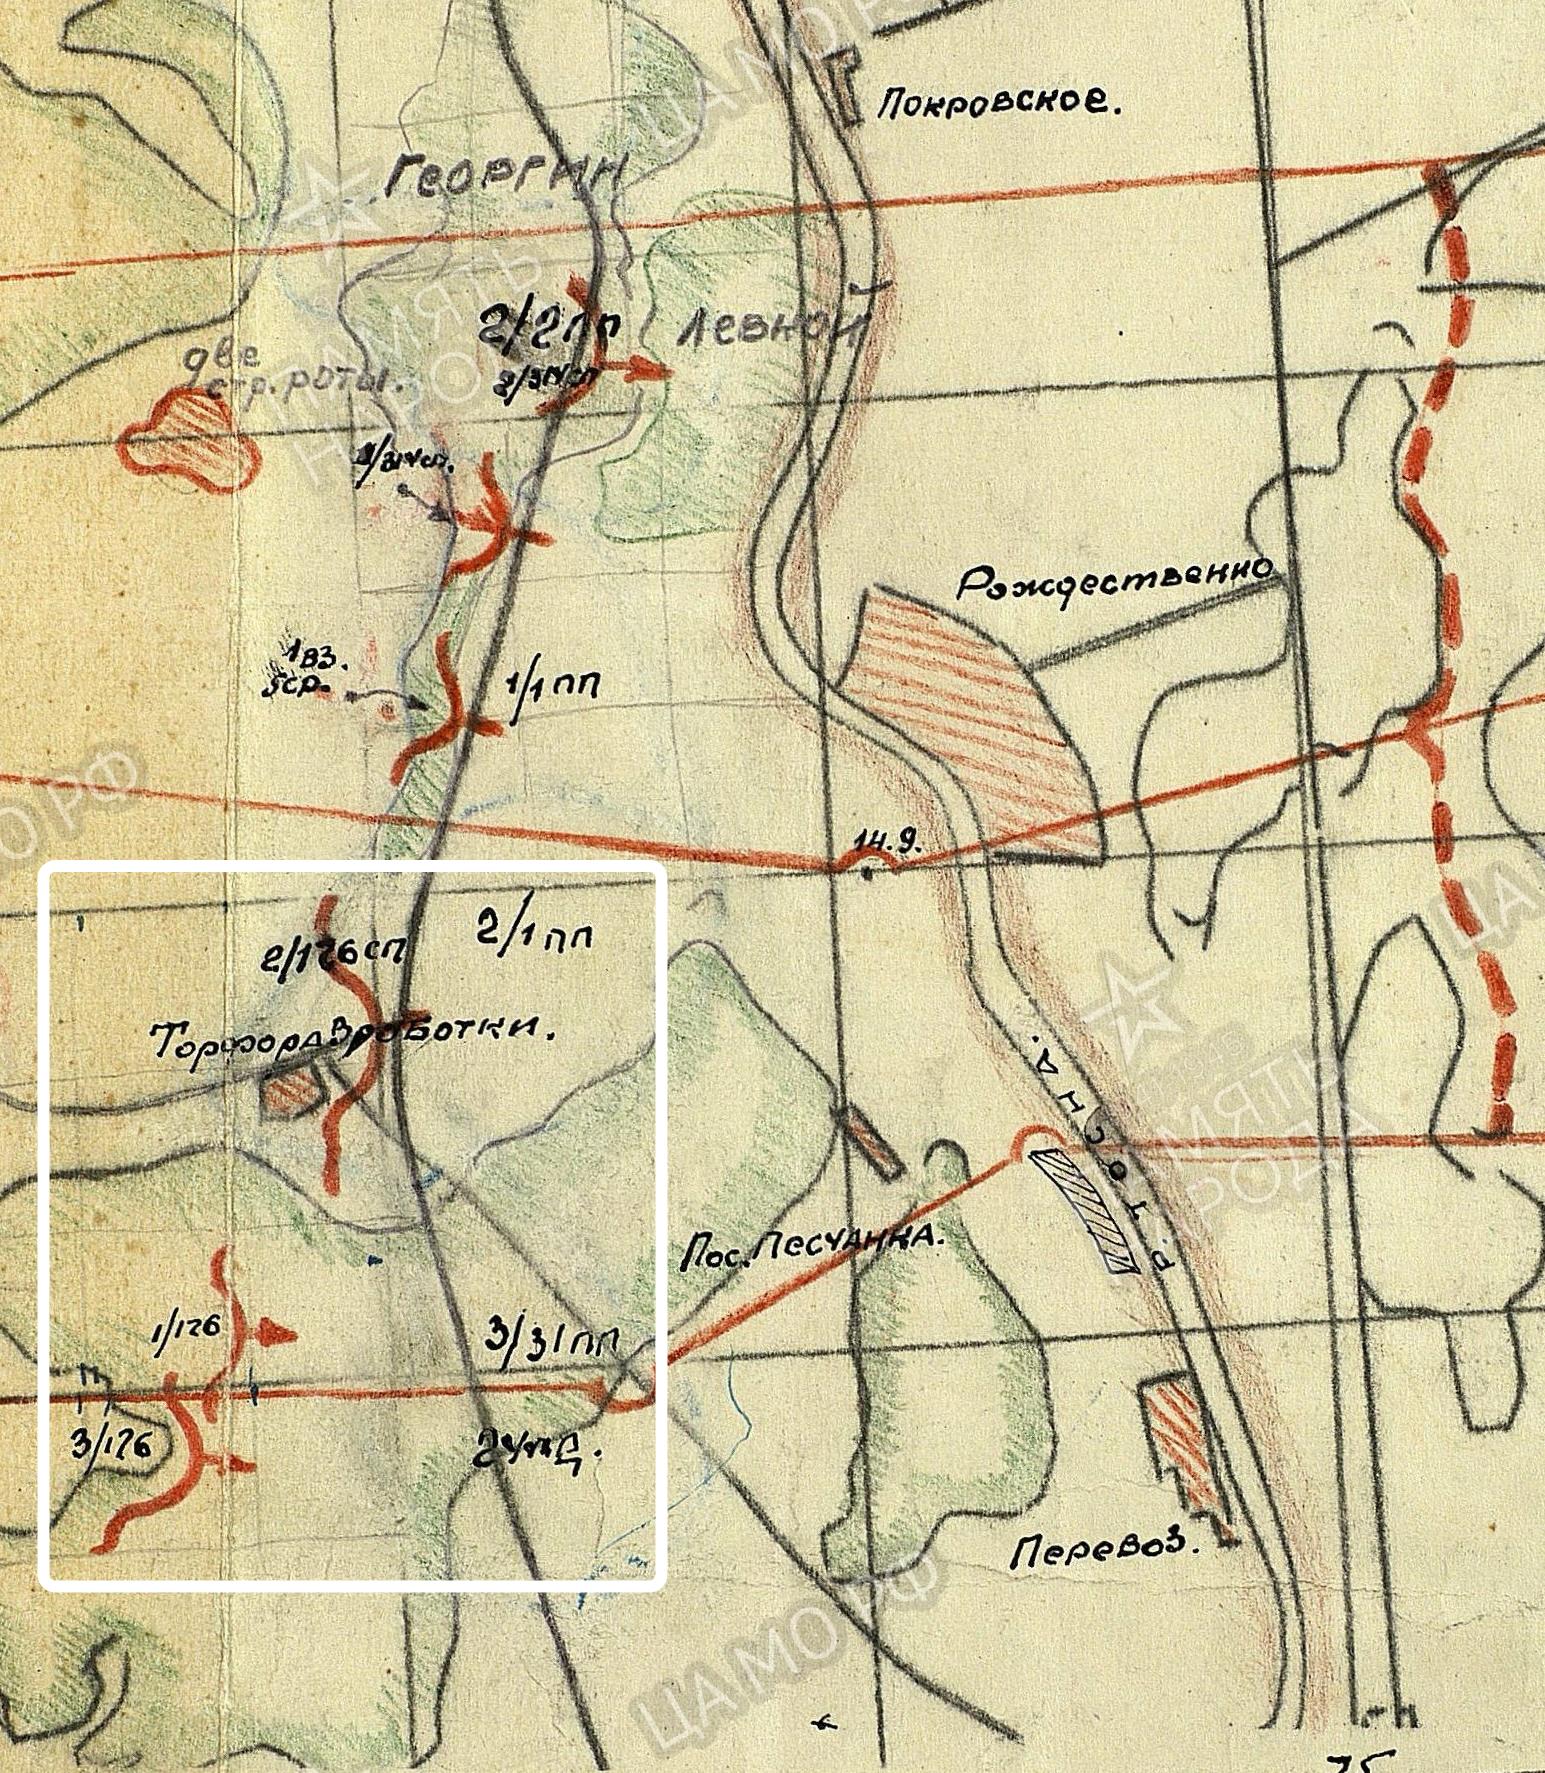 46 сд. 46 Лужская дивизия. Боевые донесения 1943 д. лёгод. Карта донесений.